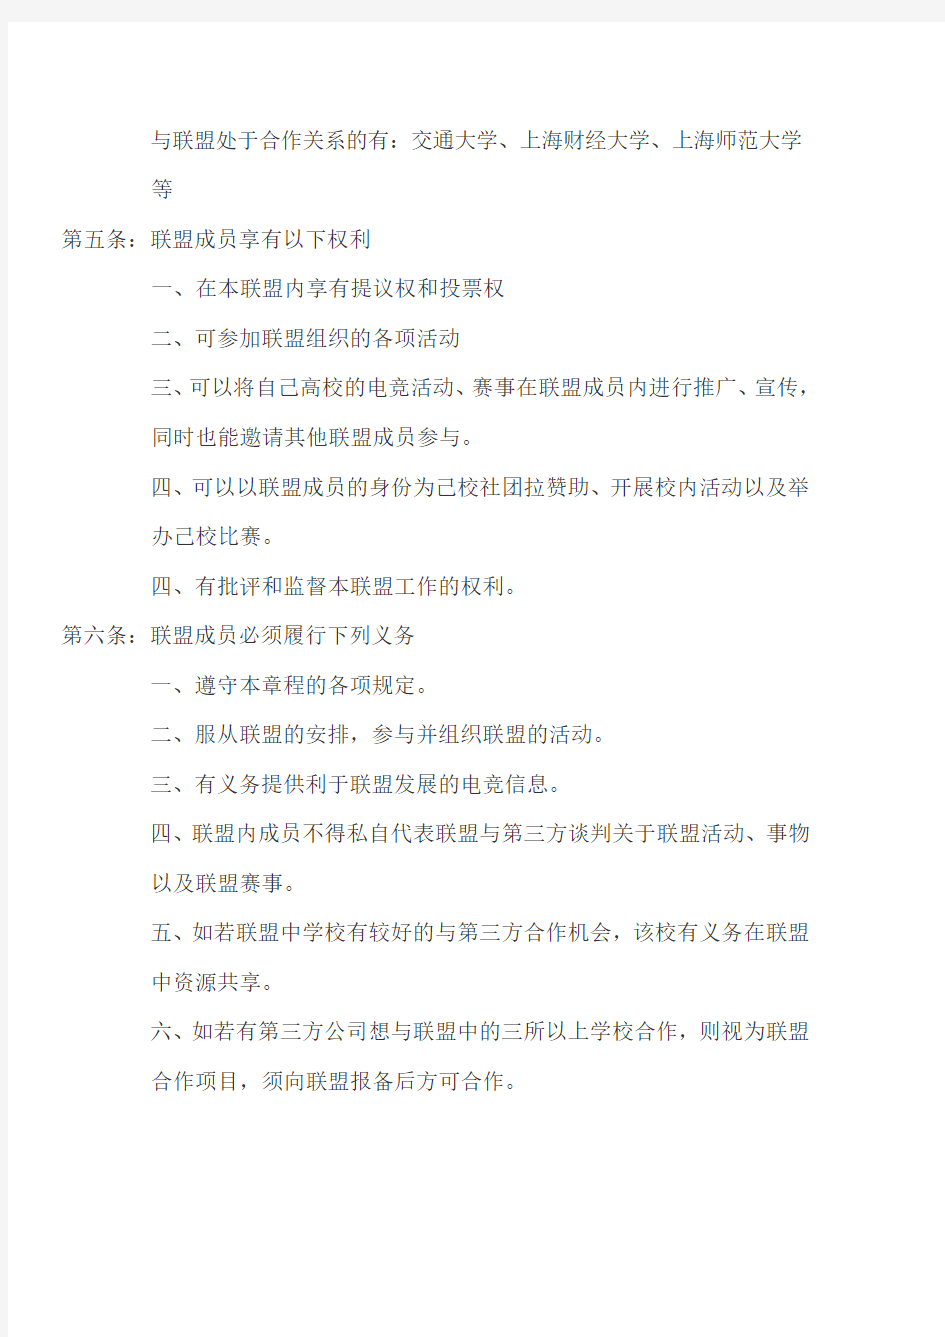 上海高校电竞联盟章程第四版